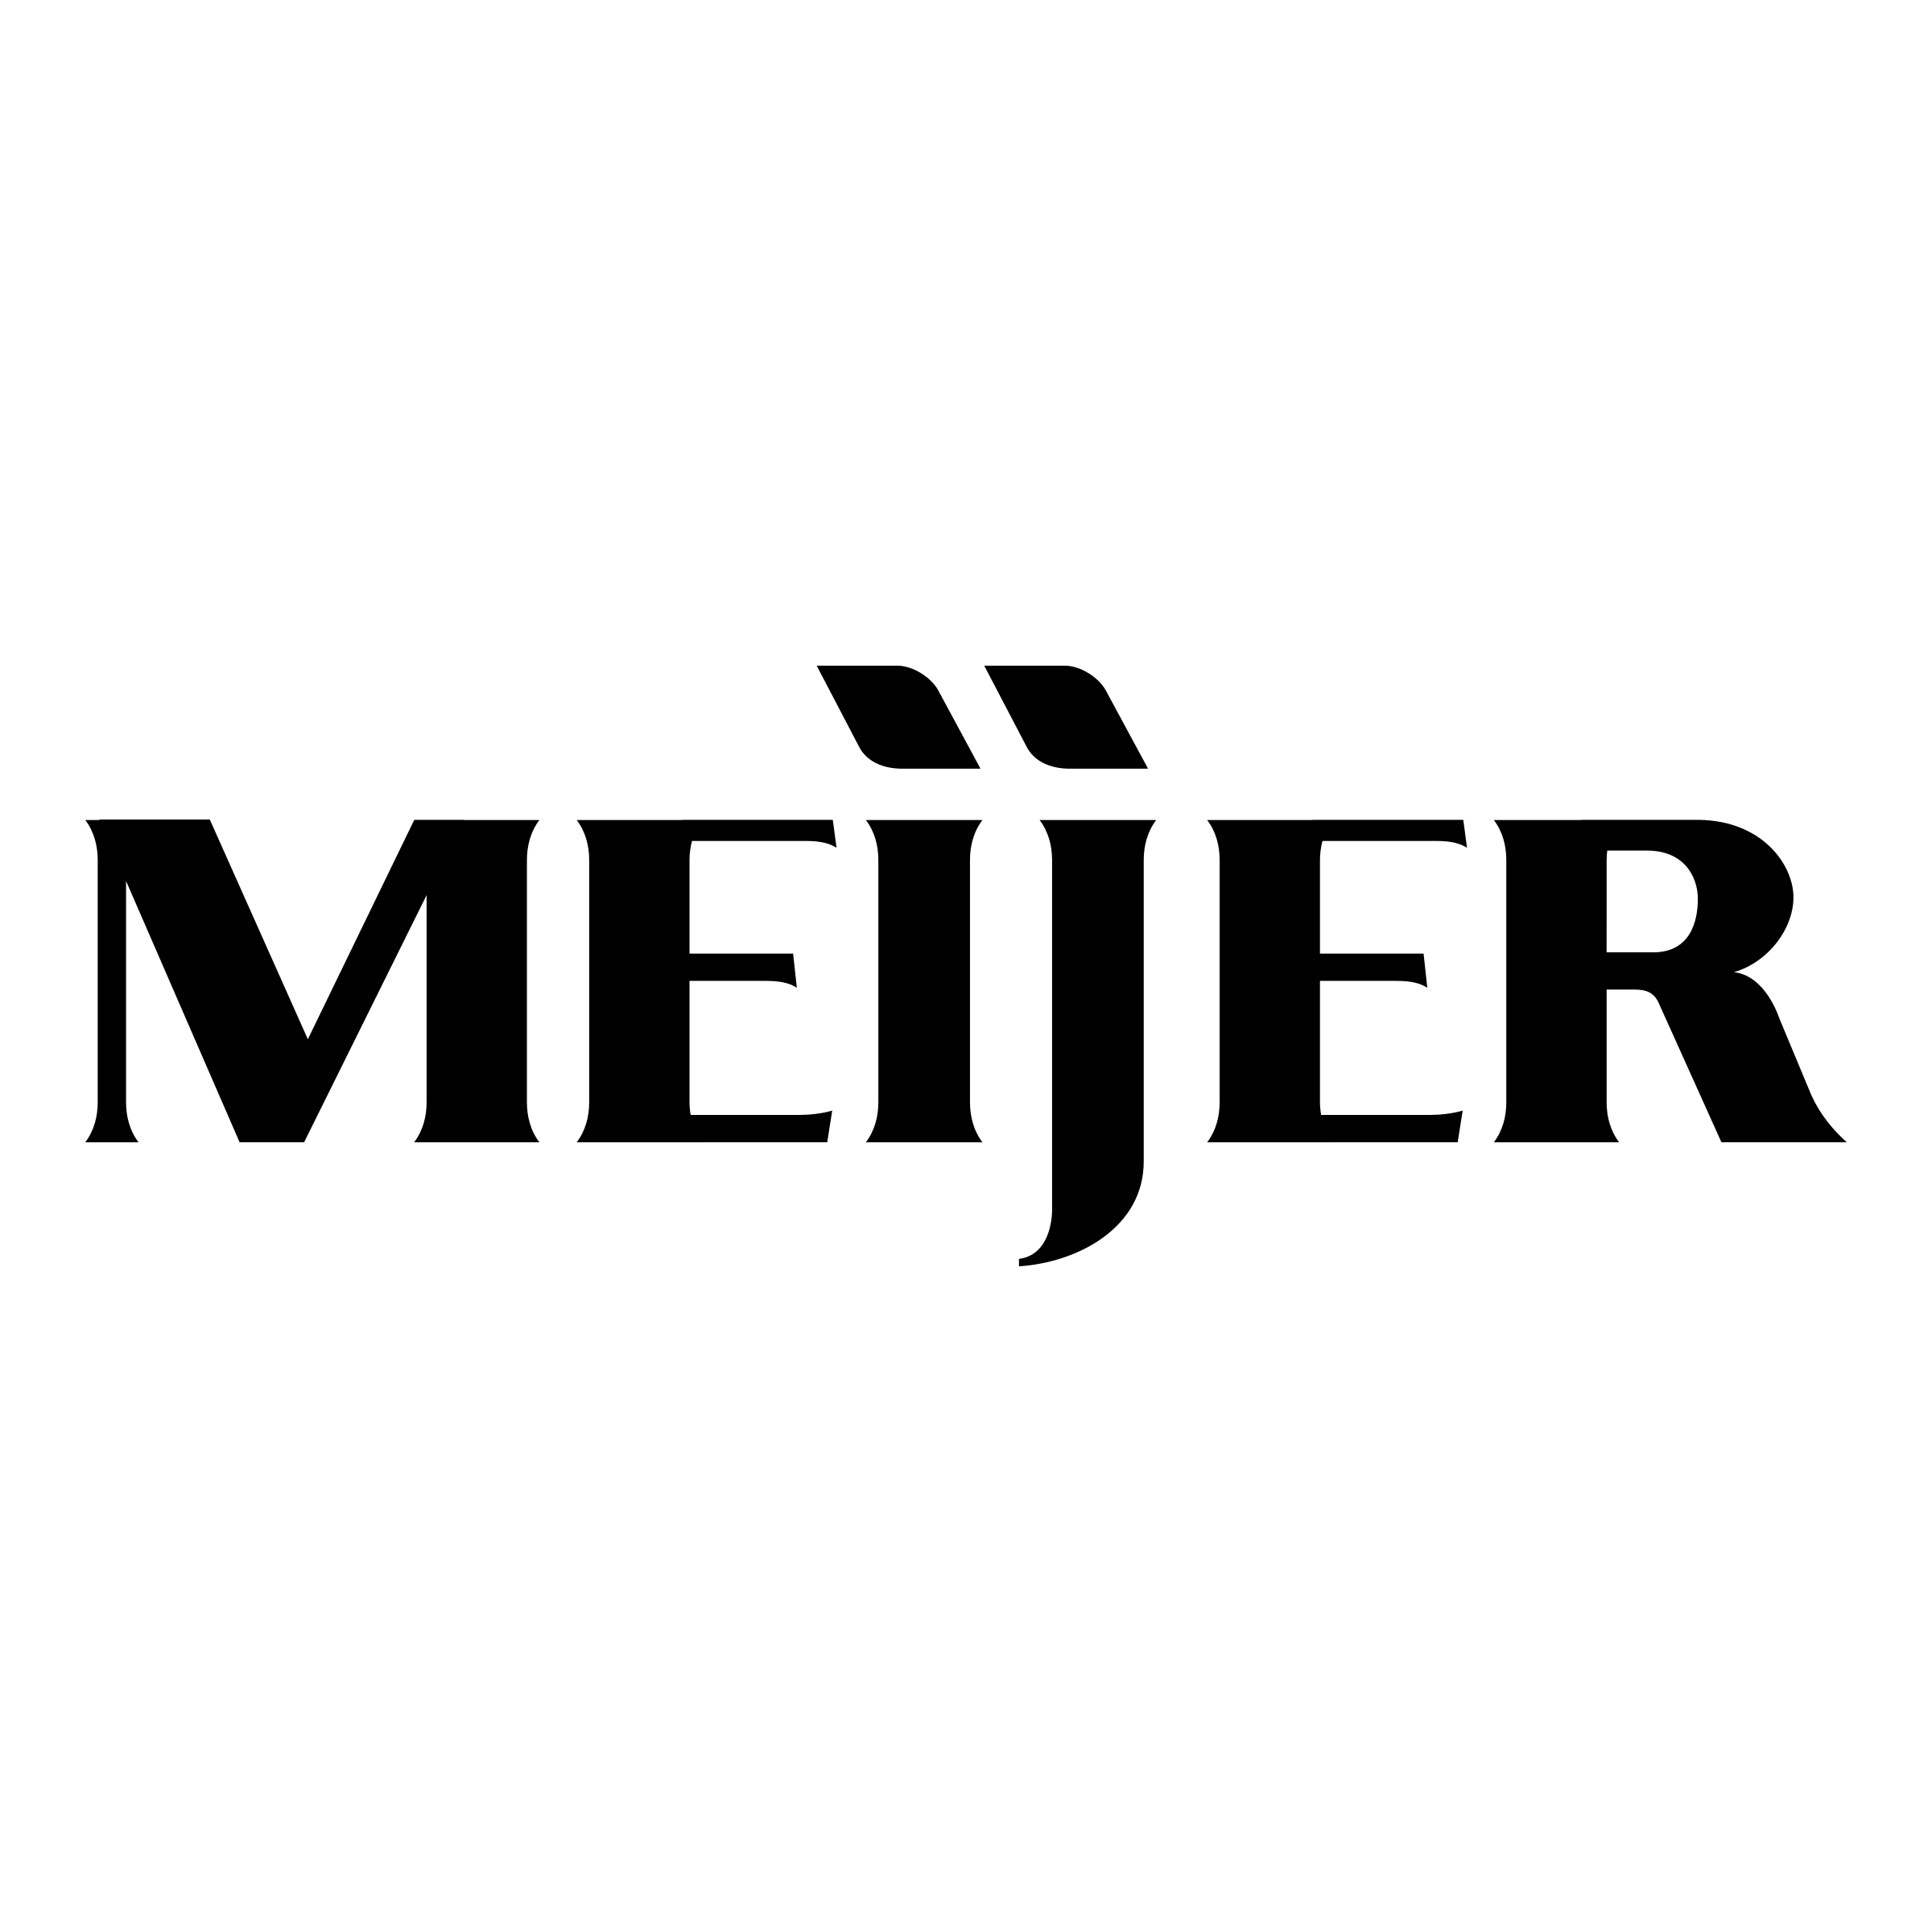 Mejier Logo - Meijer Logo PNG Transparent & SVG Vector - Freebie Supply